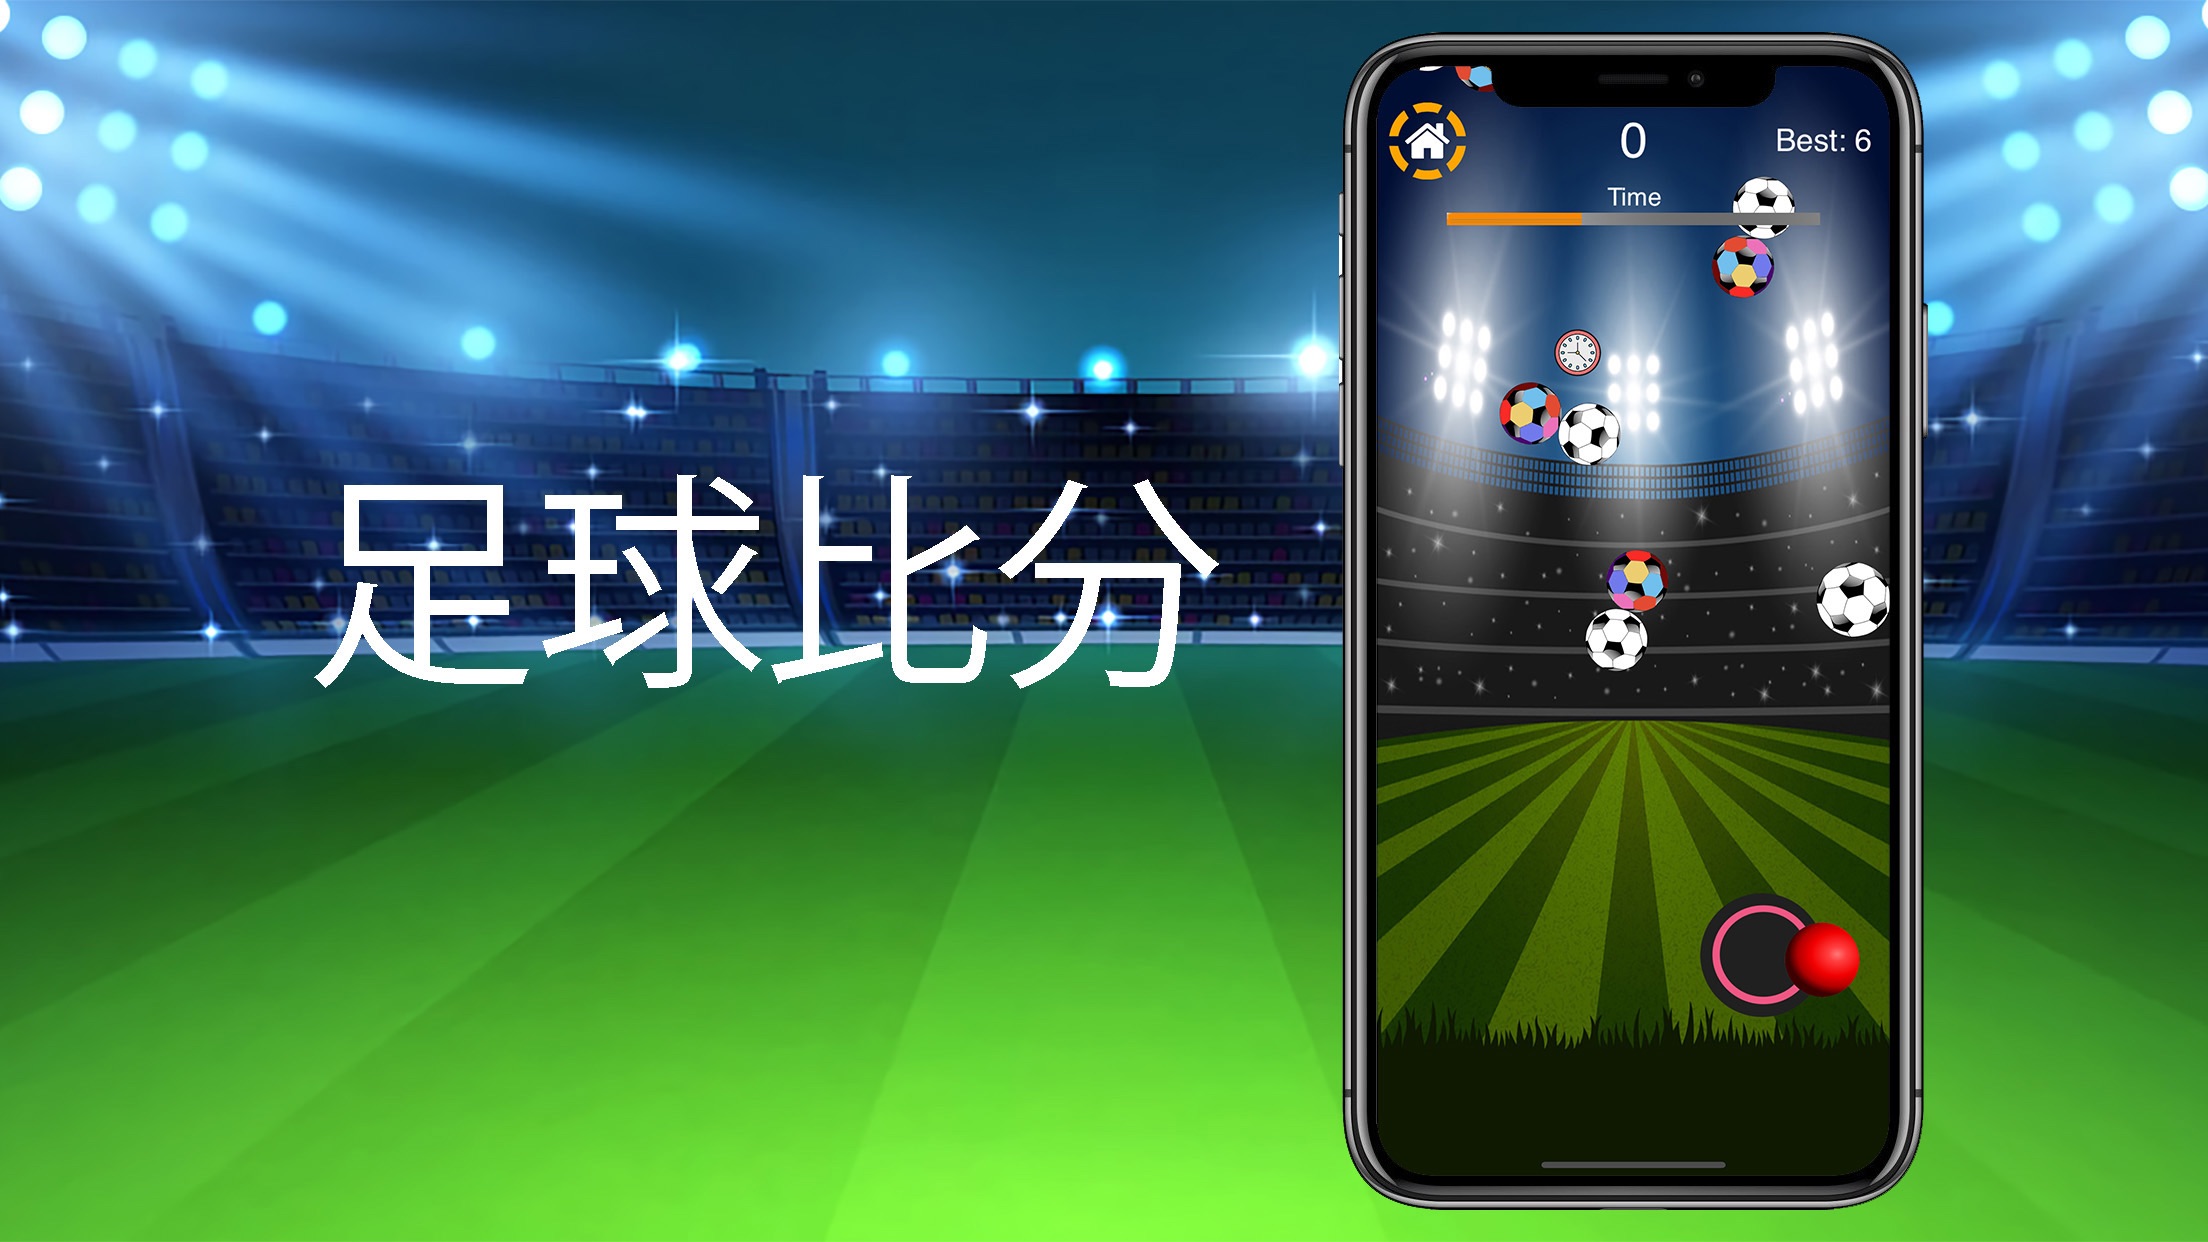 足球比分 Balrotios手机版下载_足球比分 Balrot苹果版官方下载